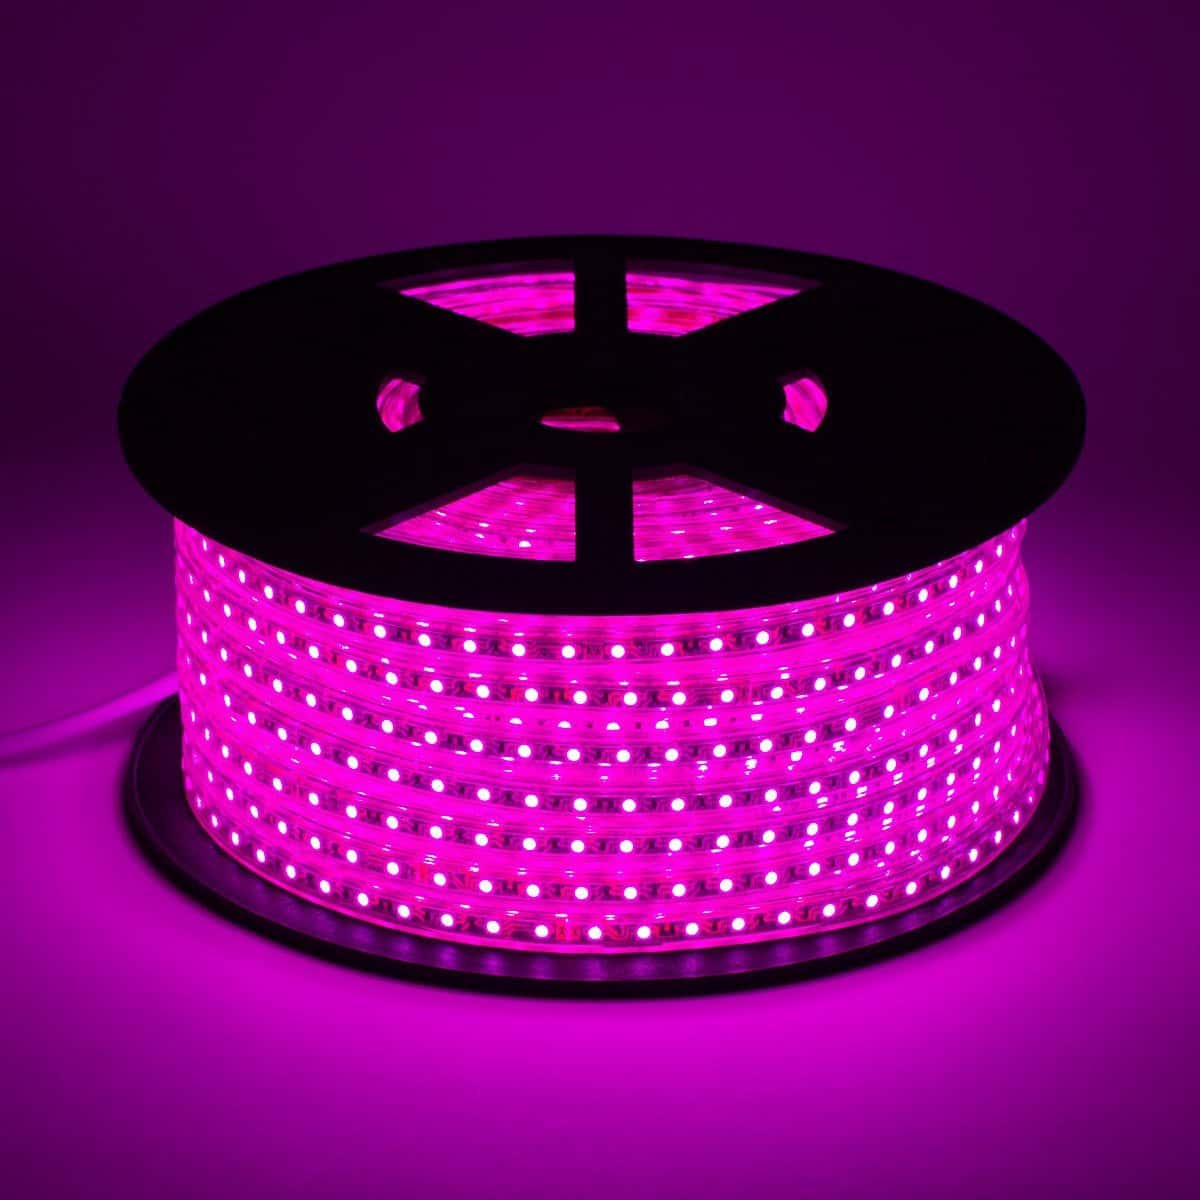 pink led strip light on black reel displaying vivid light in intense hot pink color